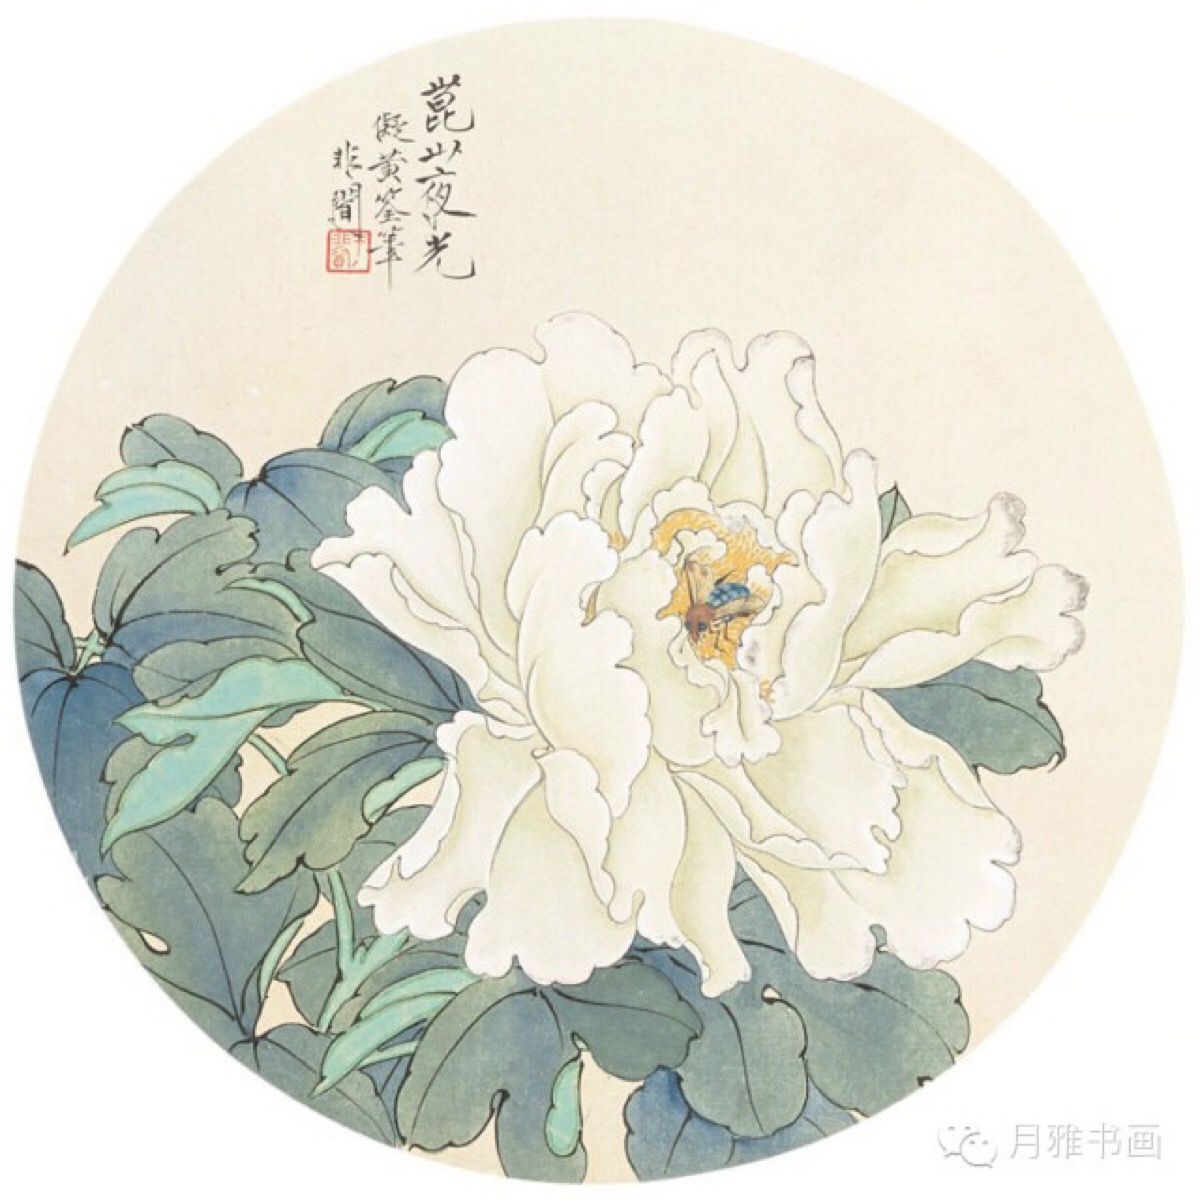 于非暗是近现代中国画史上致力于工笔花鸟画研究与创作,并有着重要